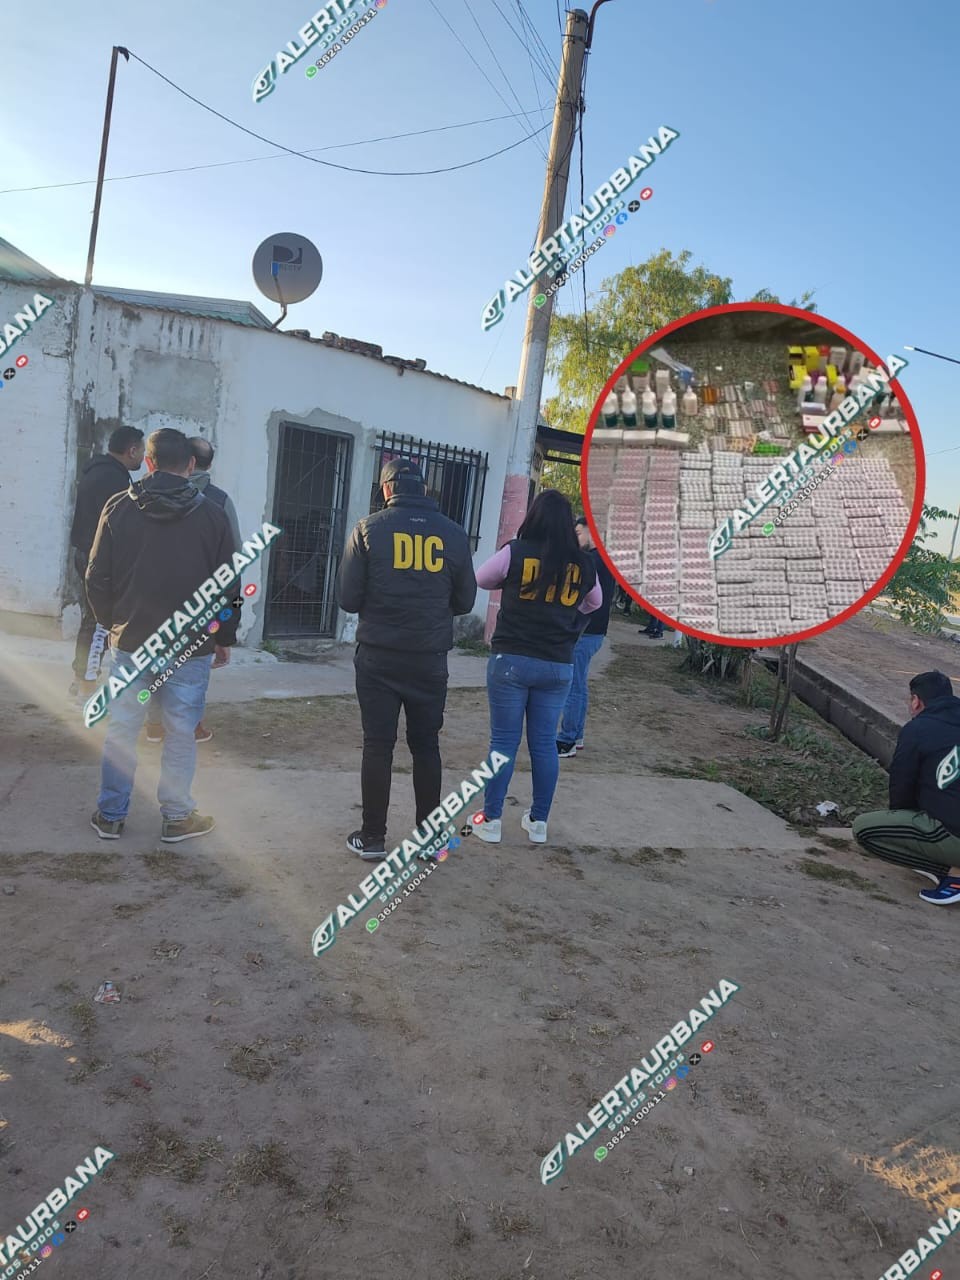 Resistencia – B° Don Bosco: una mujer comercializaba medicamentos bajo receta por redes sociales; la policía la buscó y allanó su domicilio